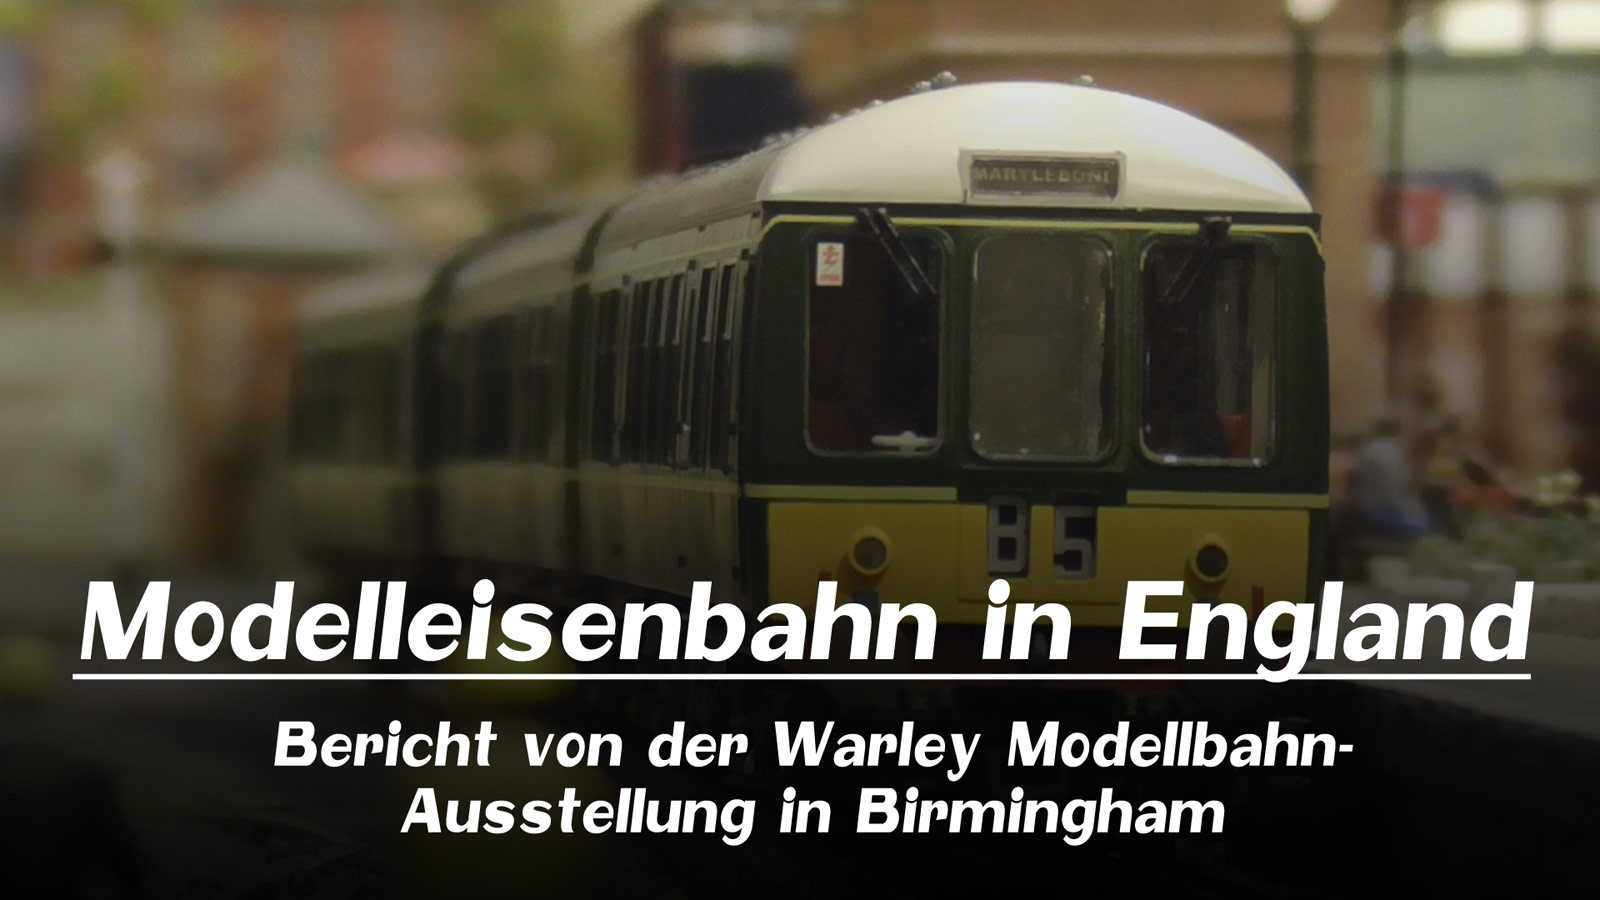 Pennula bei Prime Video: Modelleisenbahn in England - Bericht von der Warley Modellbahn-Ausstellung in Birmingham